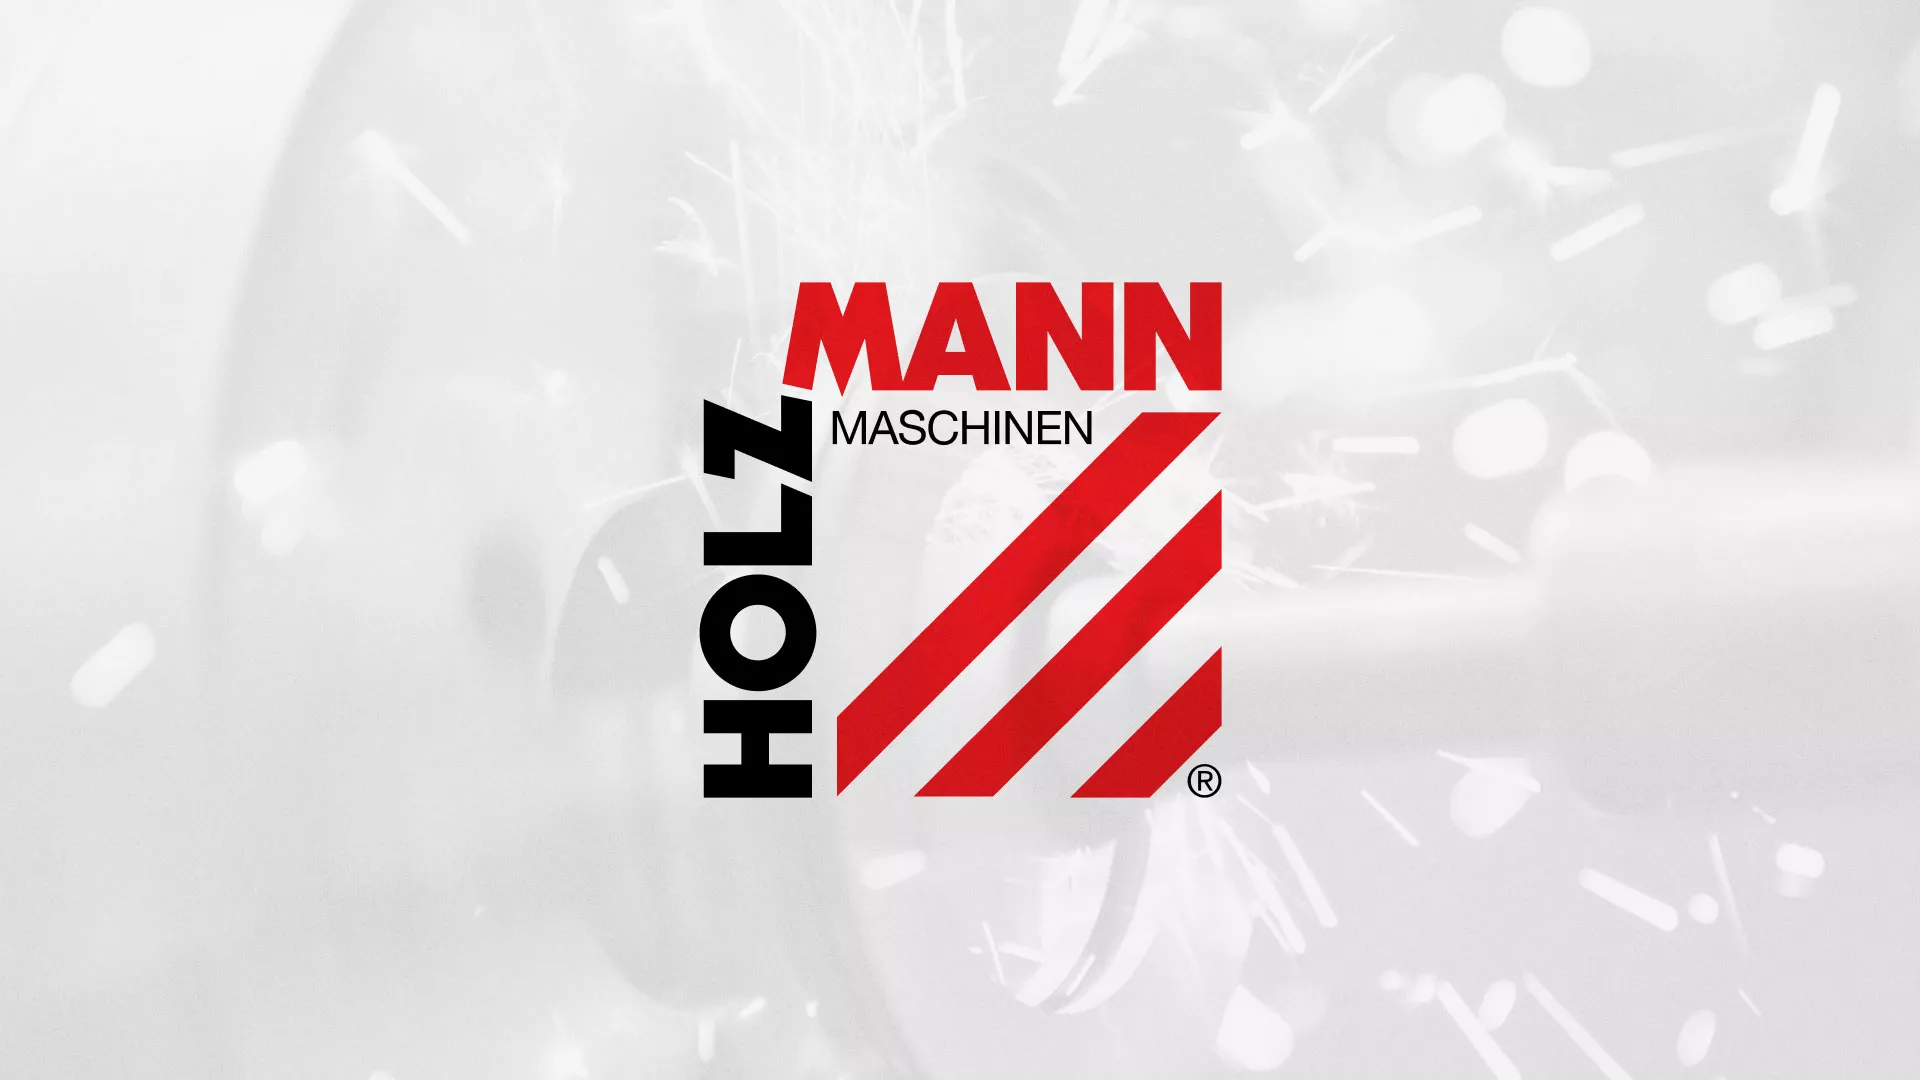 Создание сайта компании «HOLZMANN Maschinen GmbH» в Перми